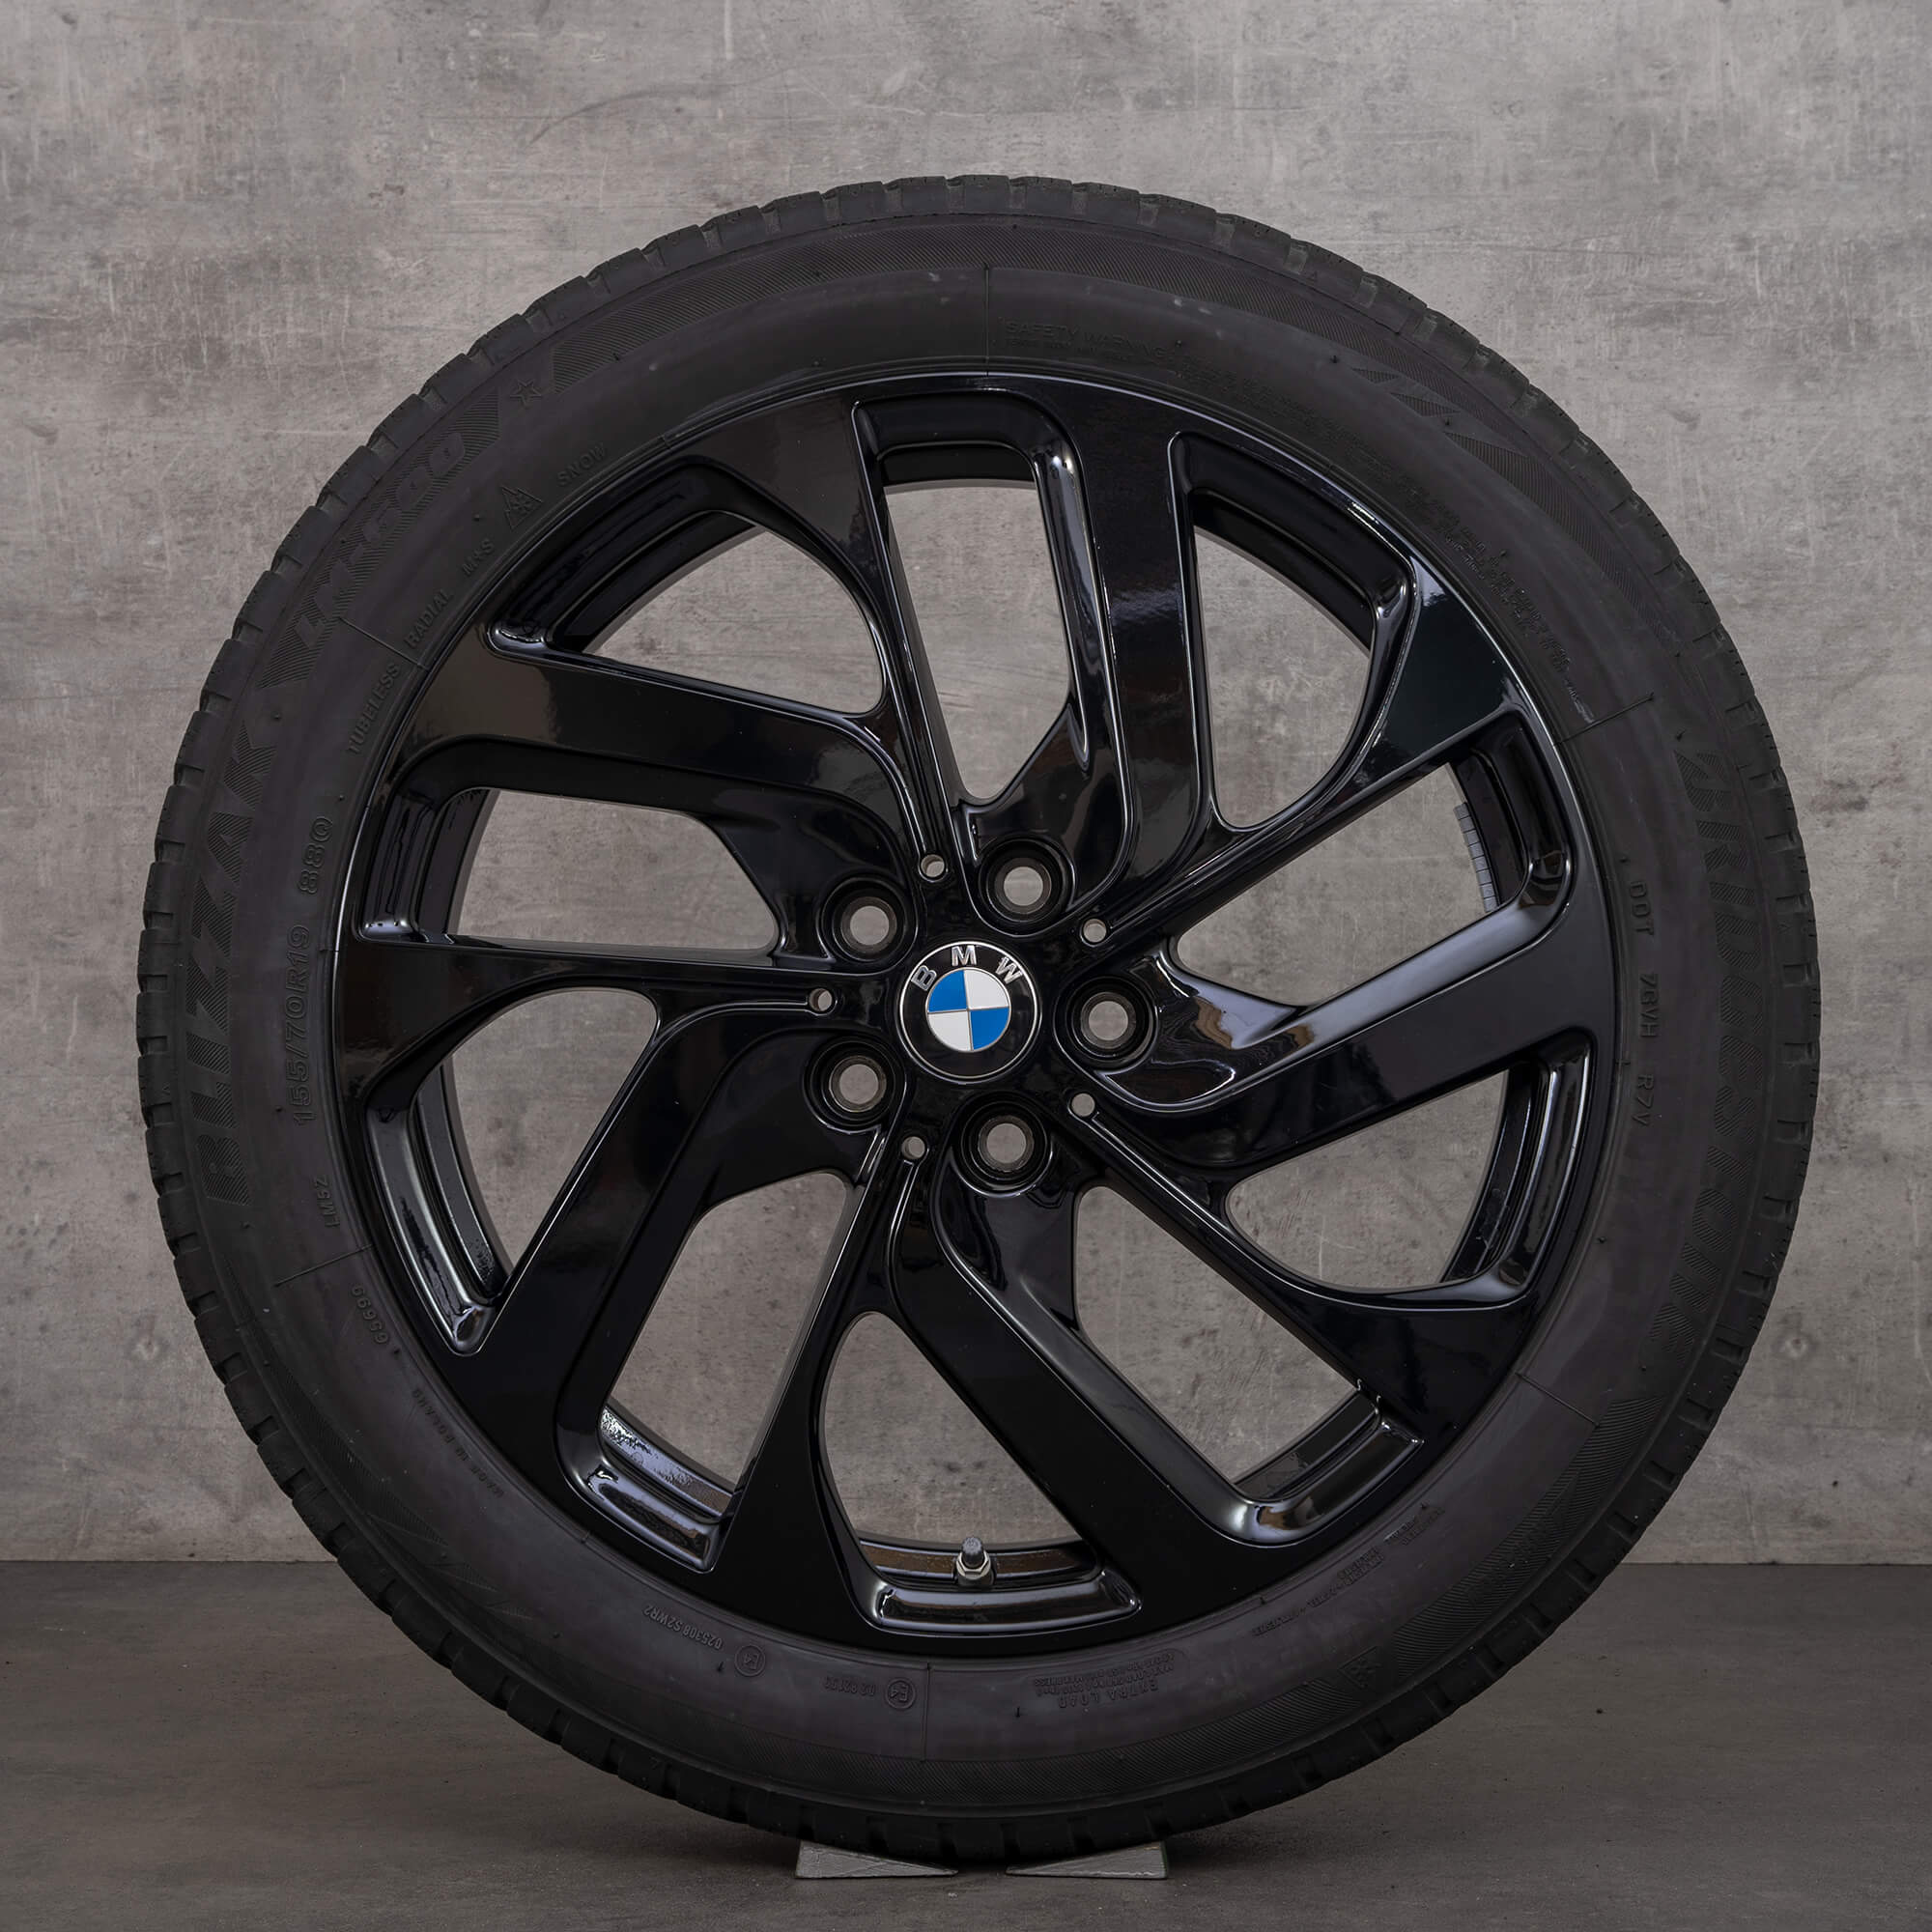 BMW i3s I01 pneus de inverno estilo turbina 428 jantes 19 polegadas 6887937